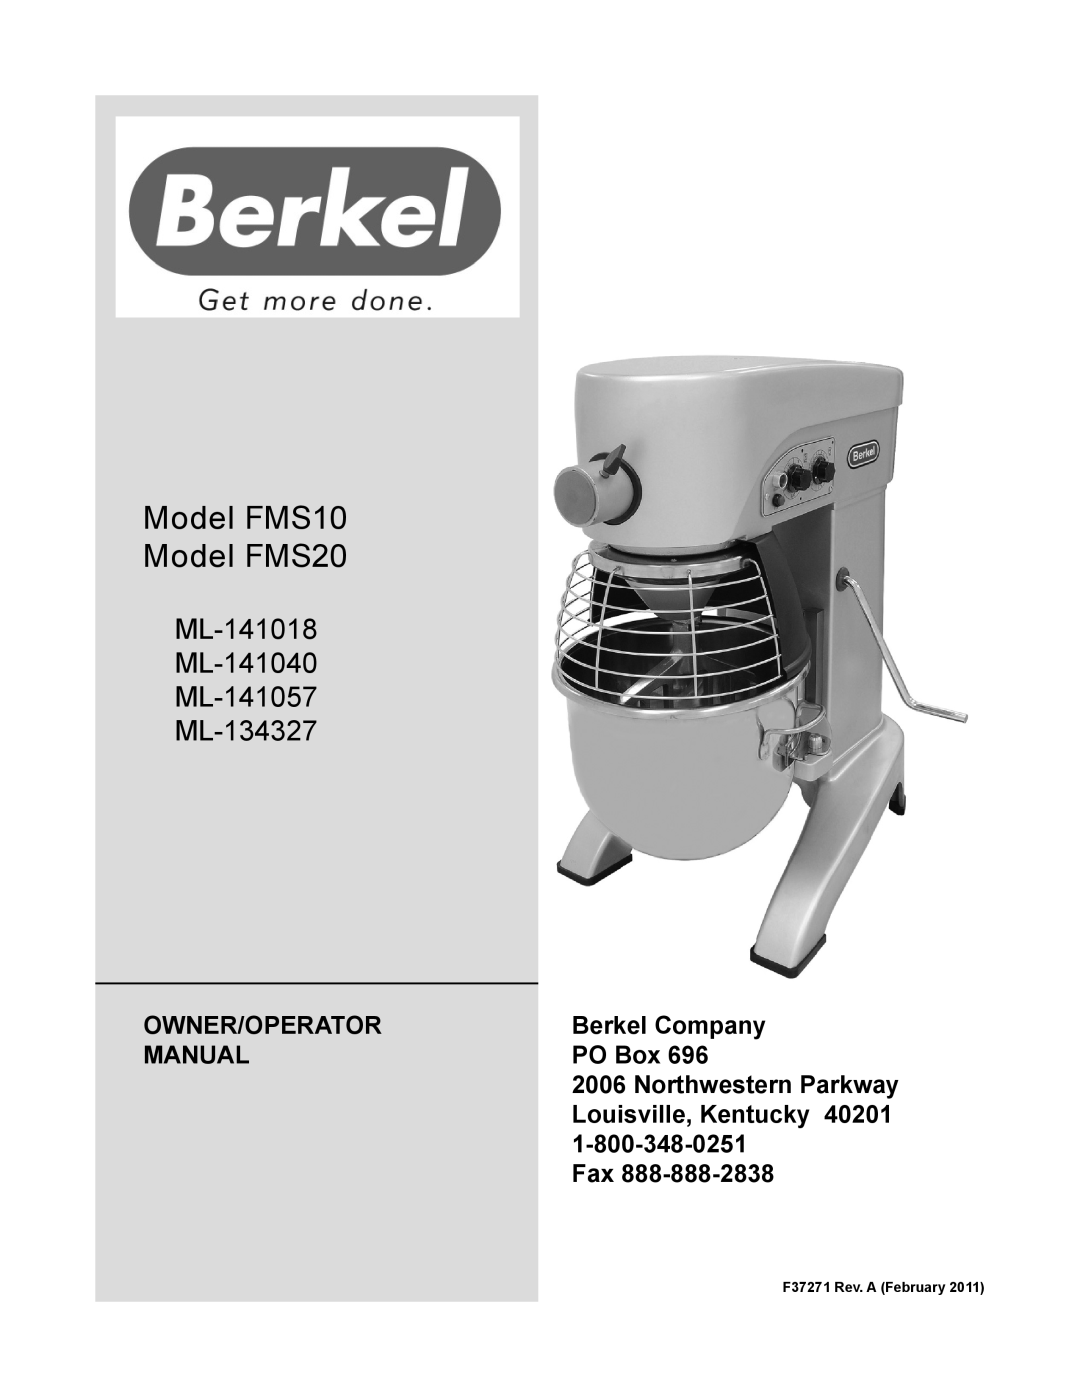 Berkel manual Model FMS10 Model FMS20, ML-141018 ML-141040 ML-141057 ML-134327, Owner/Operator, Berkel Company, Manual 